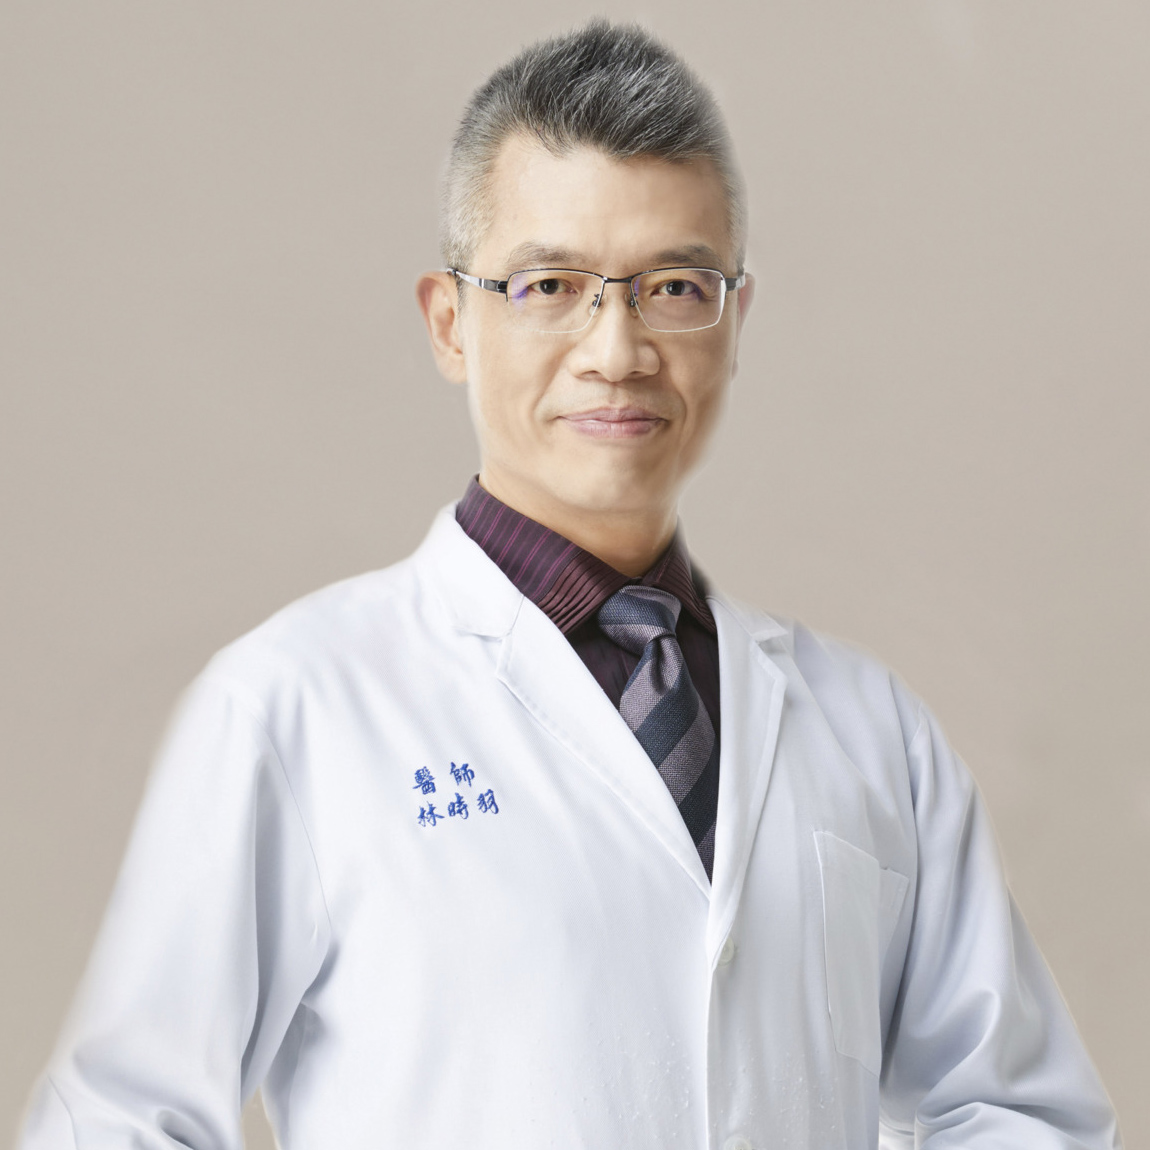 林時羽   Dr. リン Shyr-Yeu Lin, MD, PhD., 醫師.